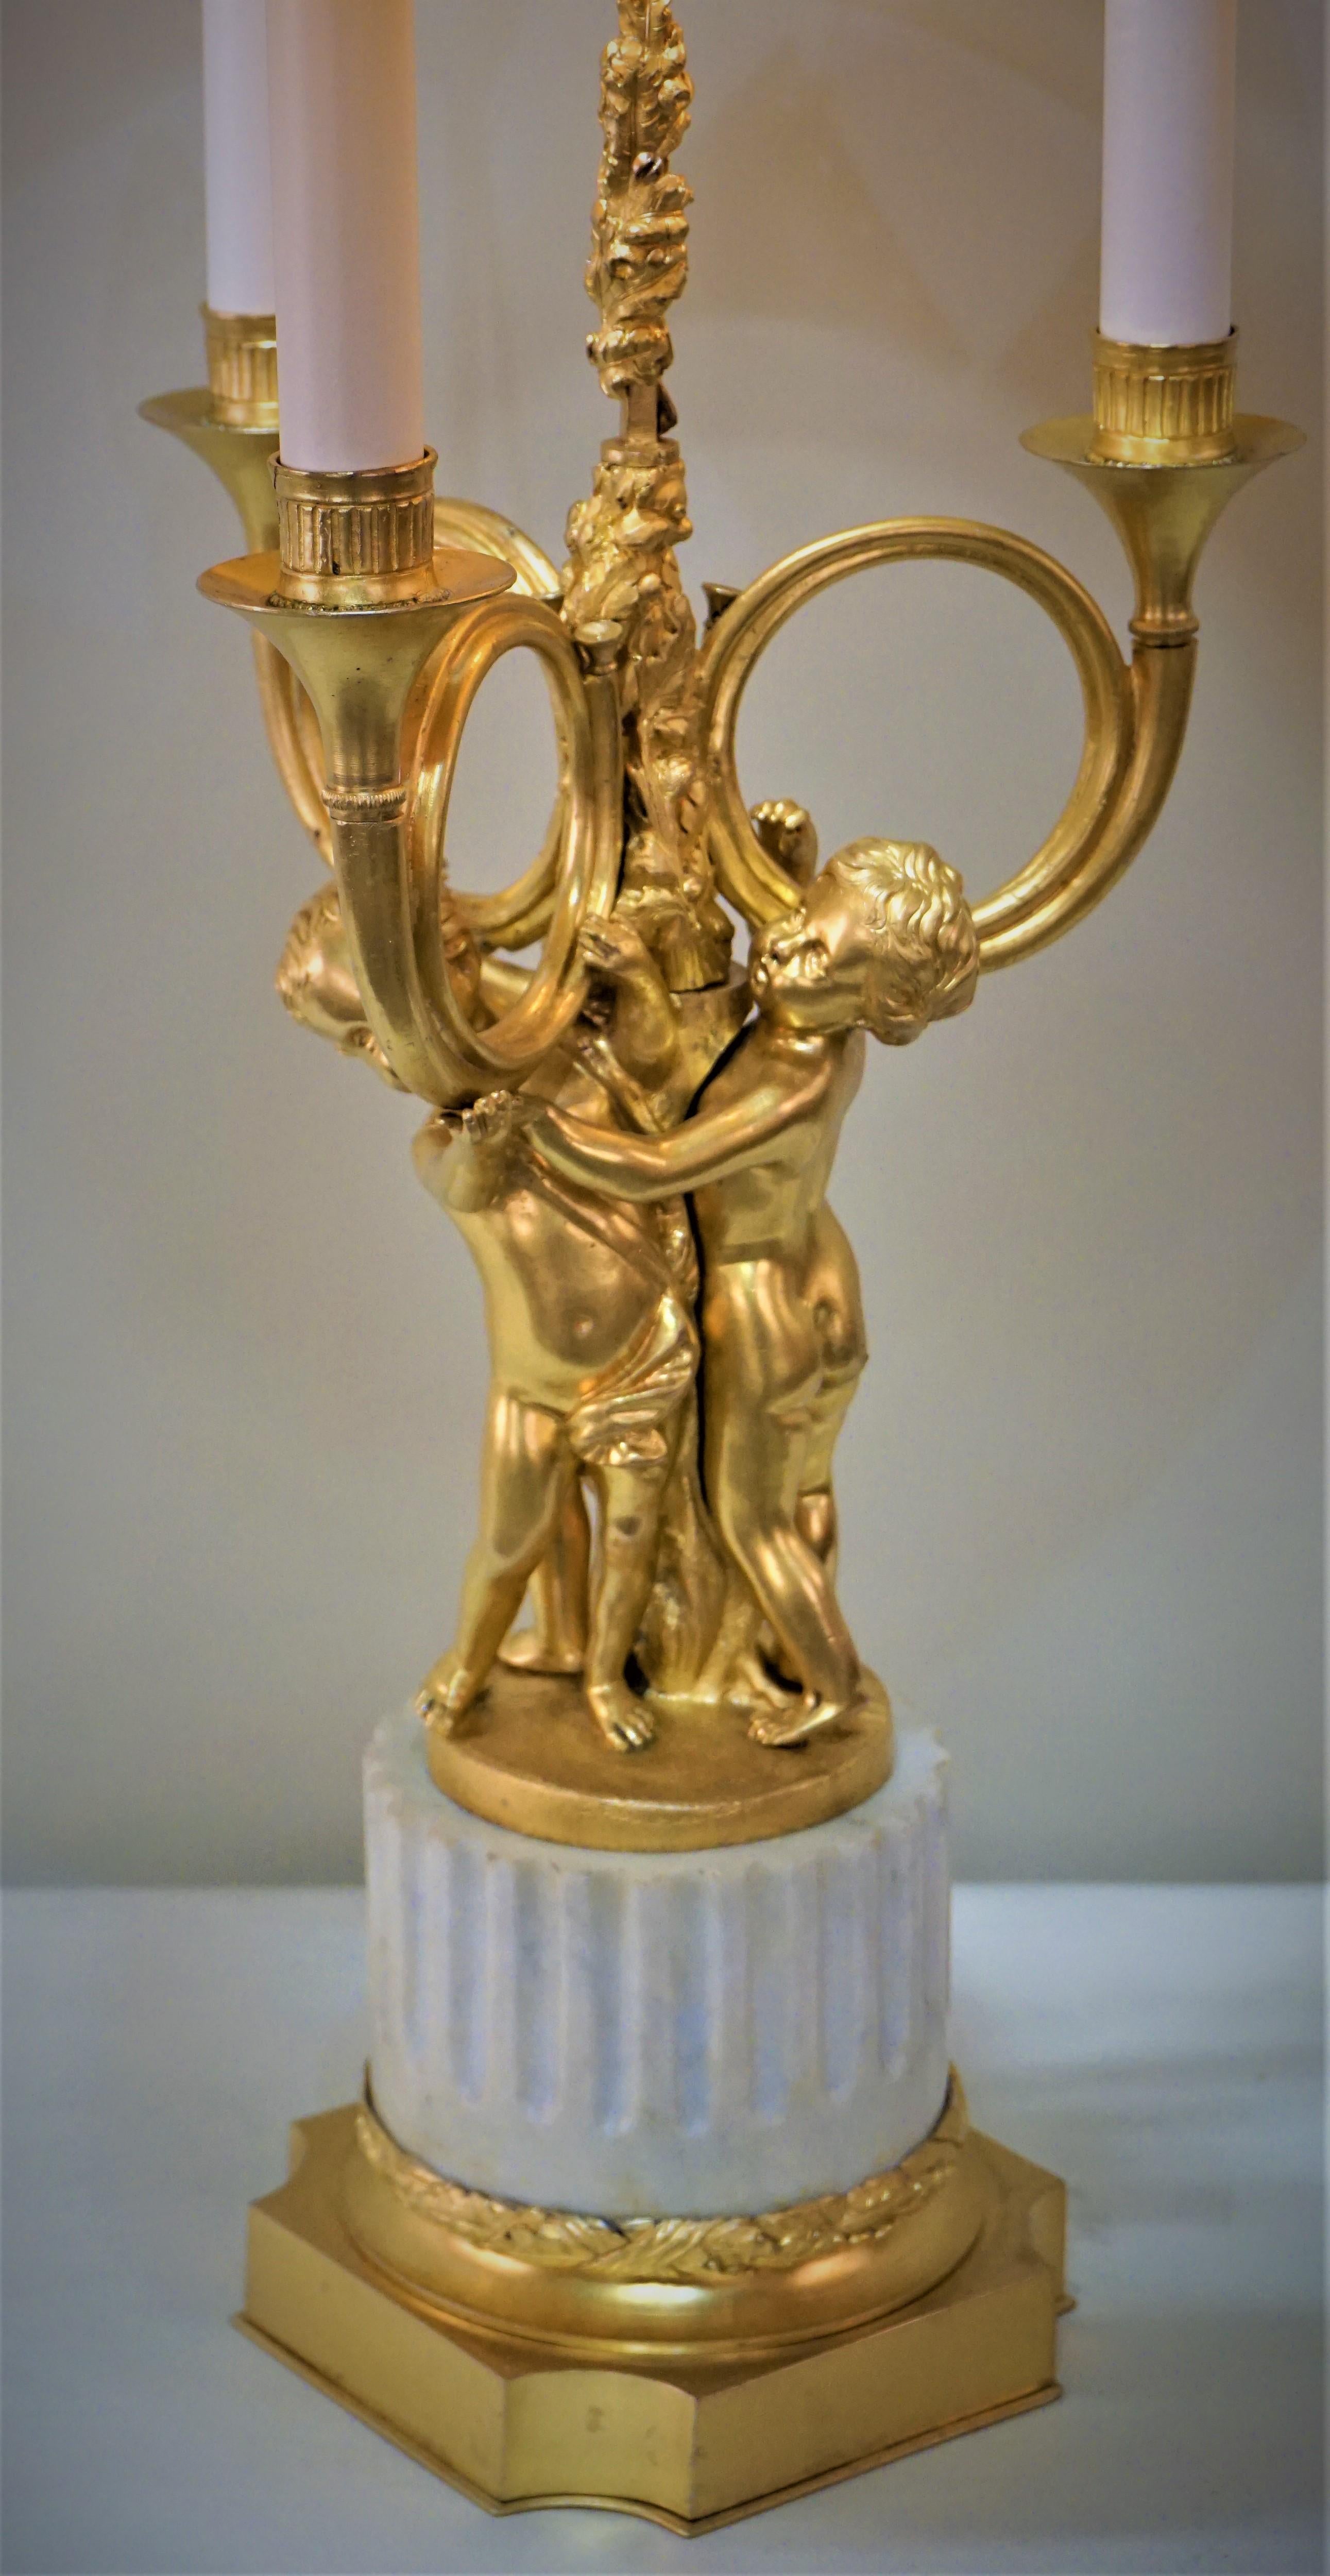 Der Sockel der Bouillotte aus Bronze und Marmor besteht aus drei Babys, die die trompetenförmigen Arme halten.
Ausgestattet mit Rückwandschirm und Goldfutter.